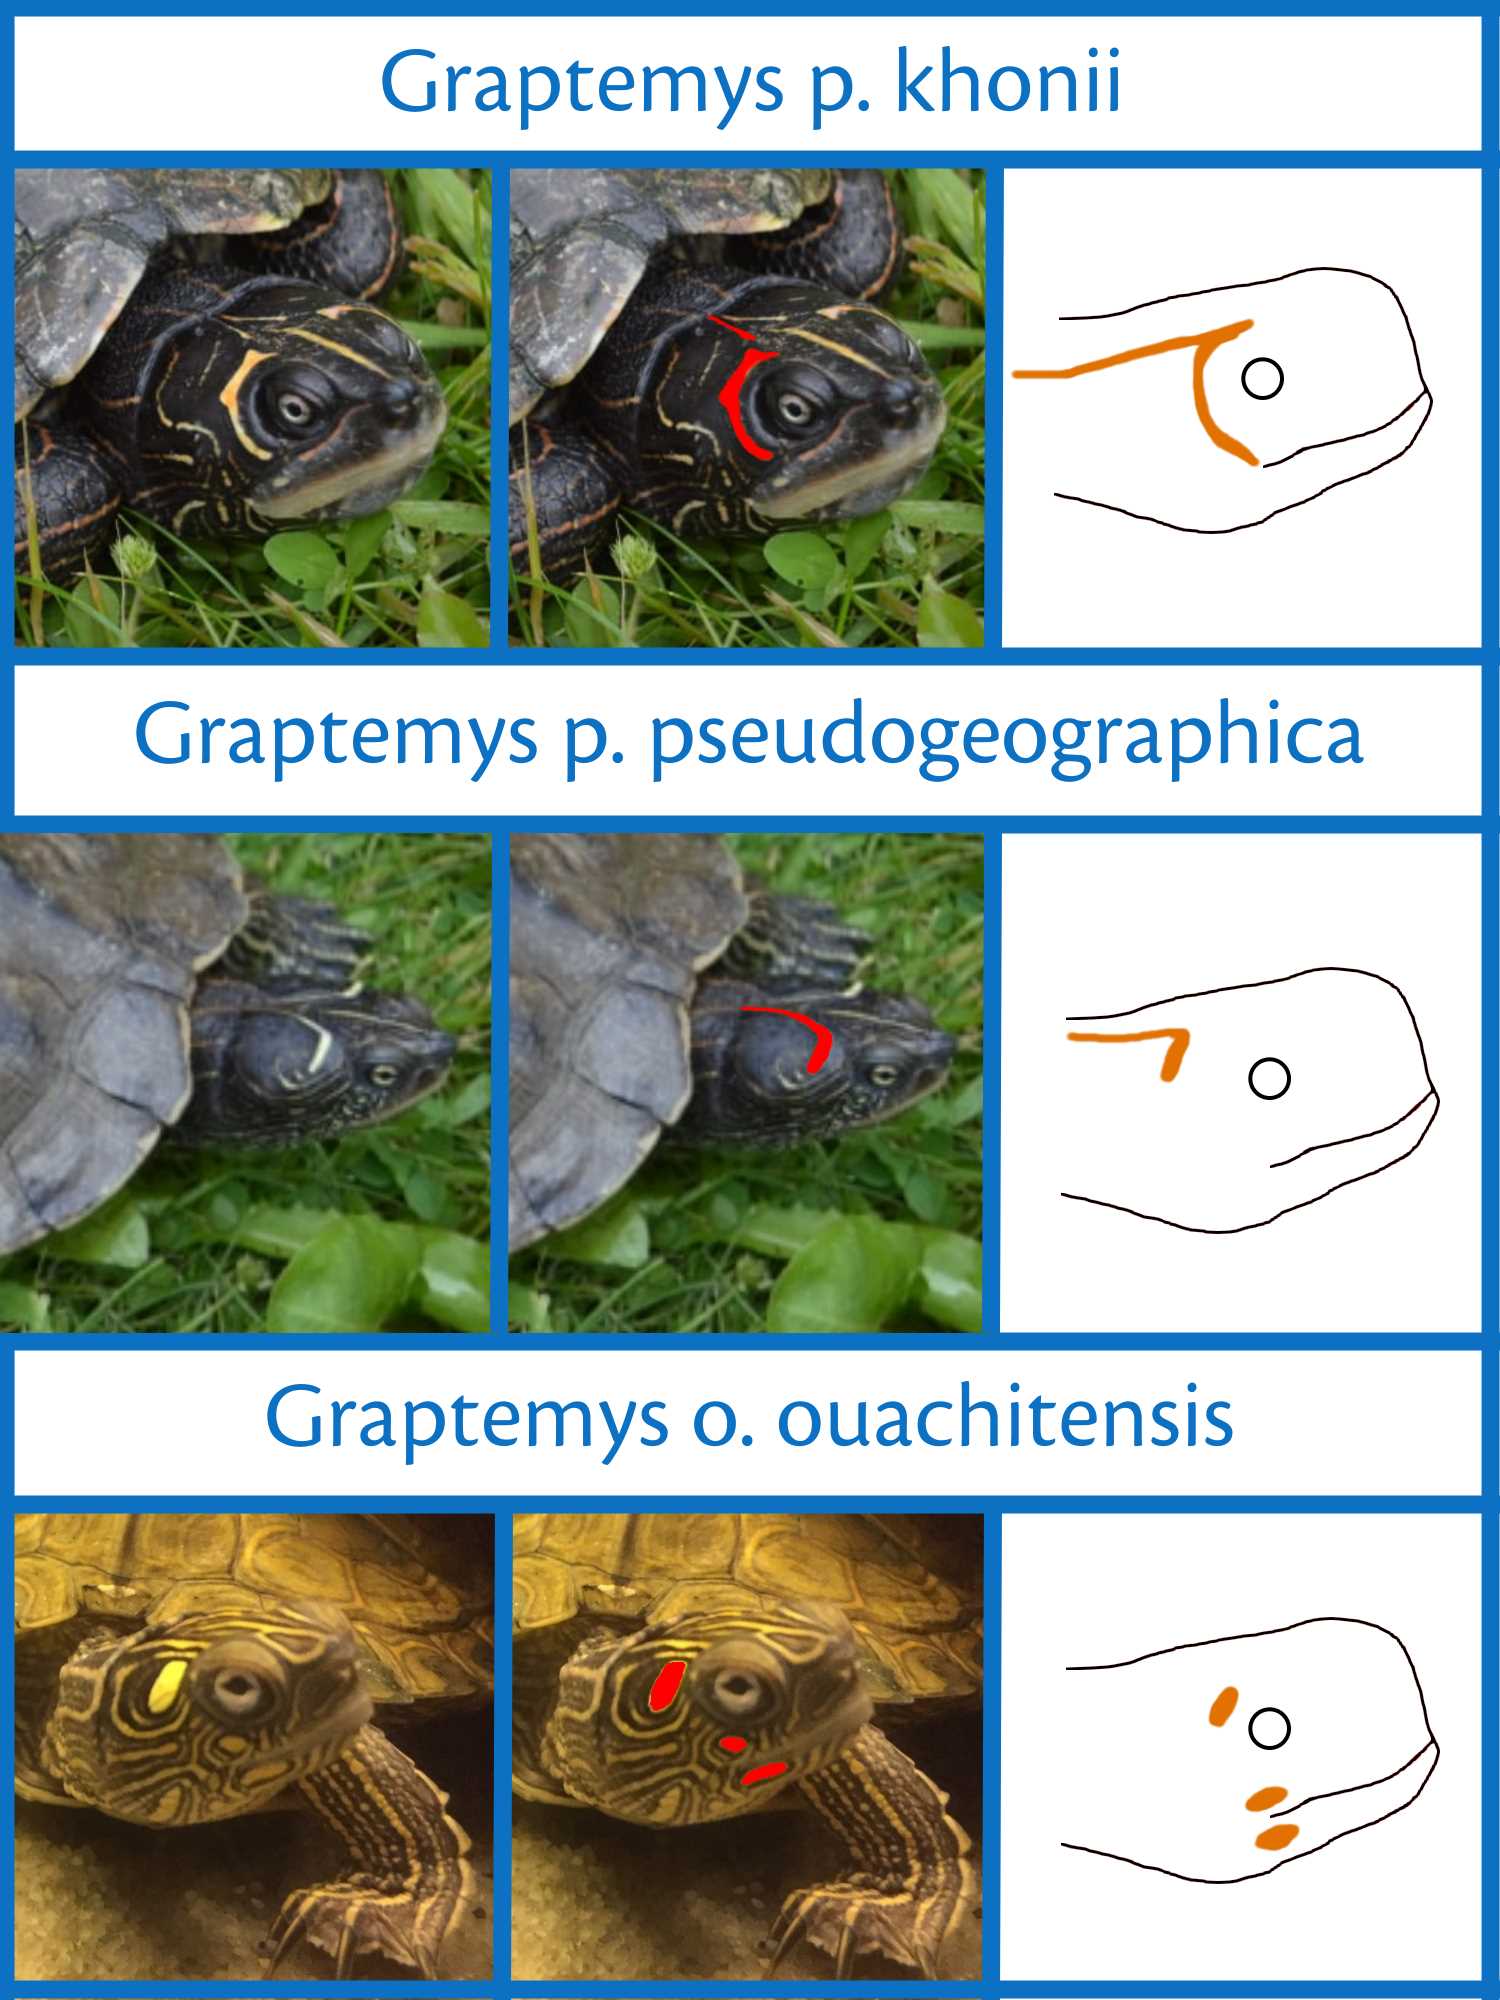 Unterschiede in der Kopfzeichnung zwischen Graptemys pseudogeographica khonii und Graptemys pseudogeographica pseudogeographica sowie Graptemys ouachtinesis